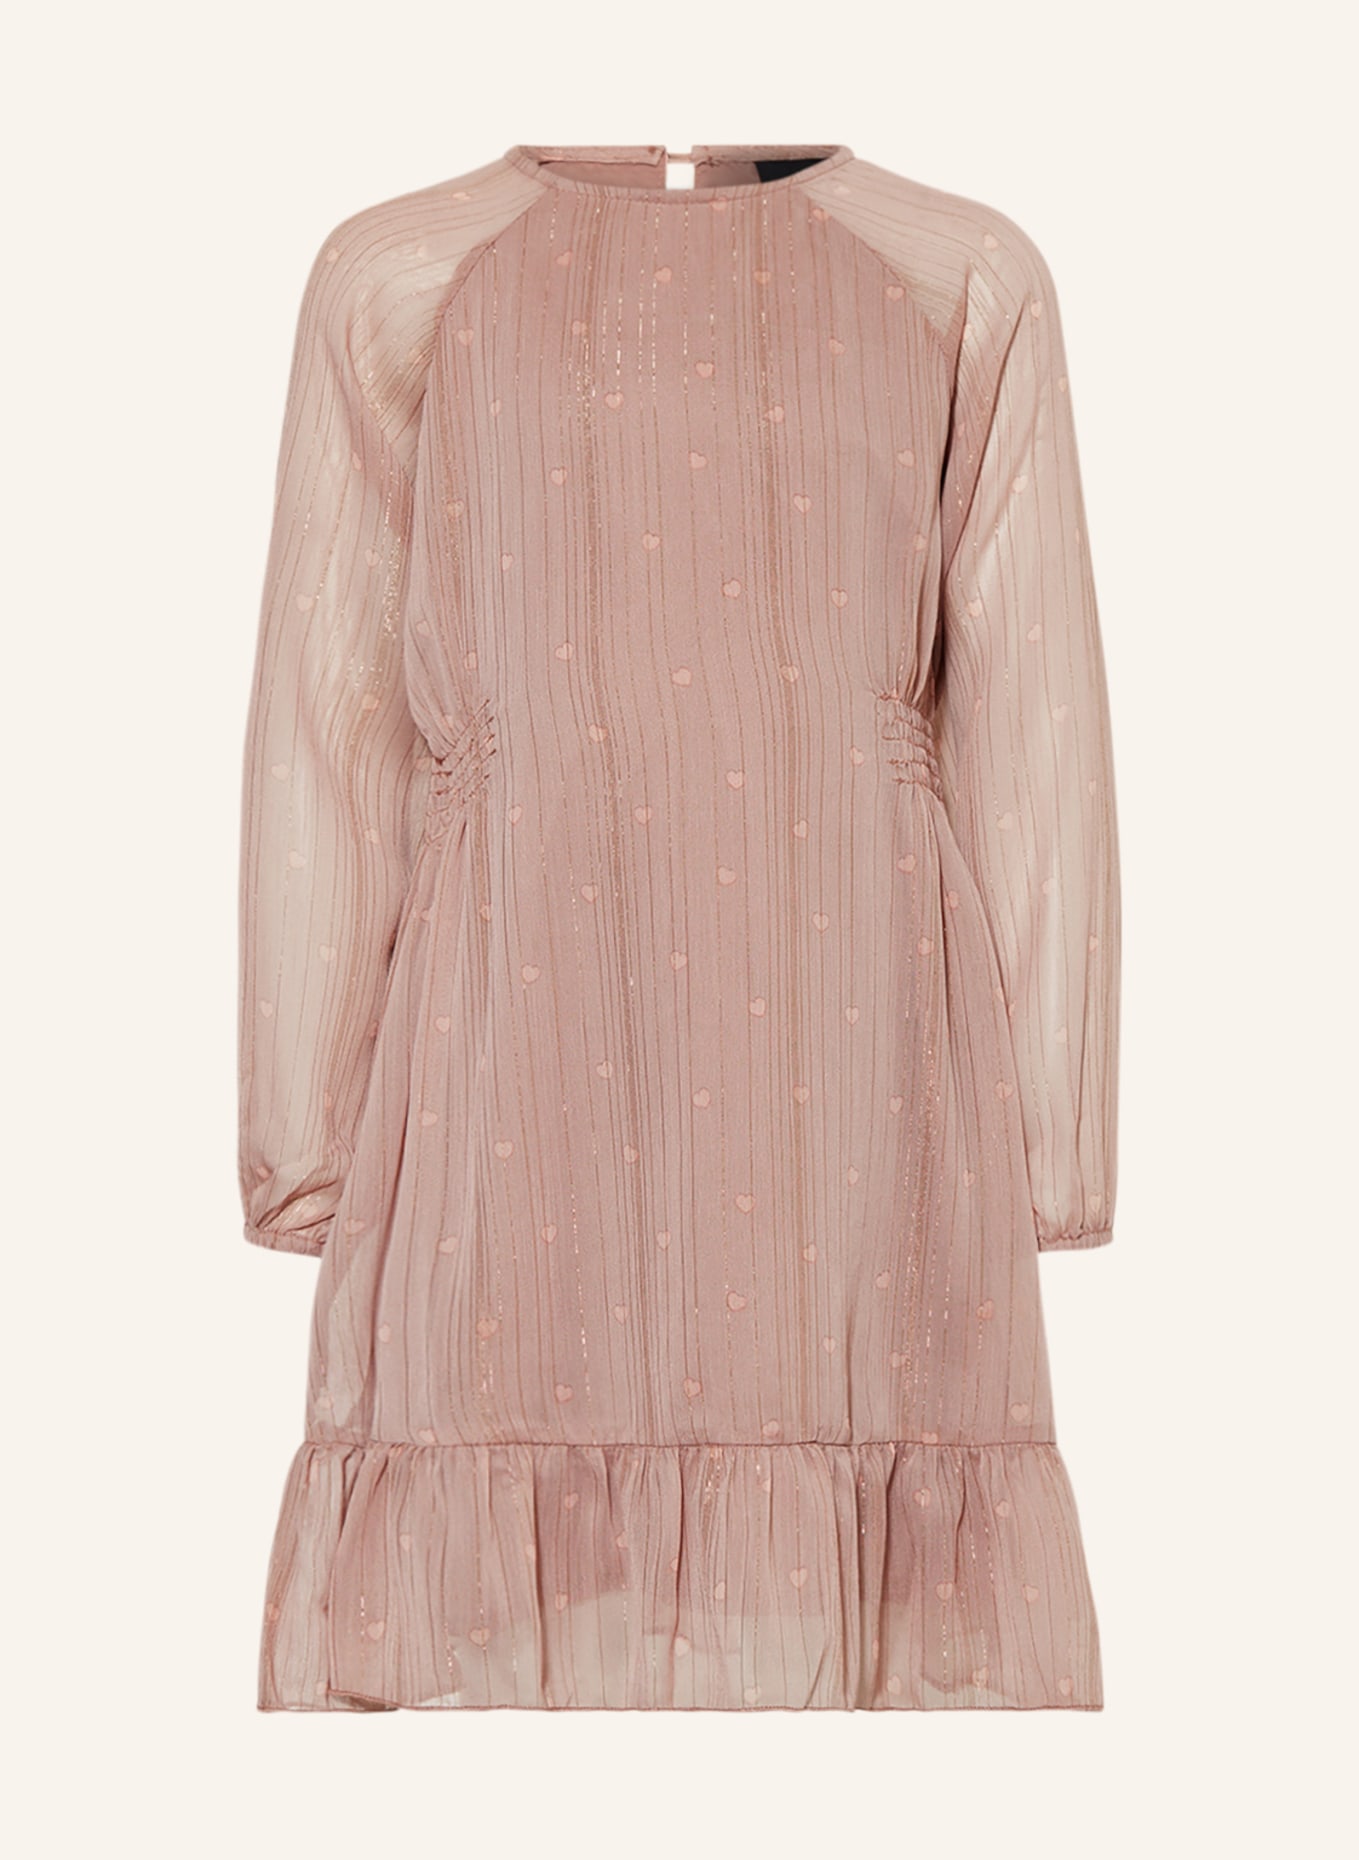 SOFIE SCHNOOR Kleid mit Glitzergarn, Farbe: ROSÉ/ ALTROSA (Bild 1)